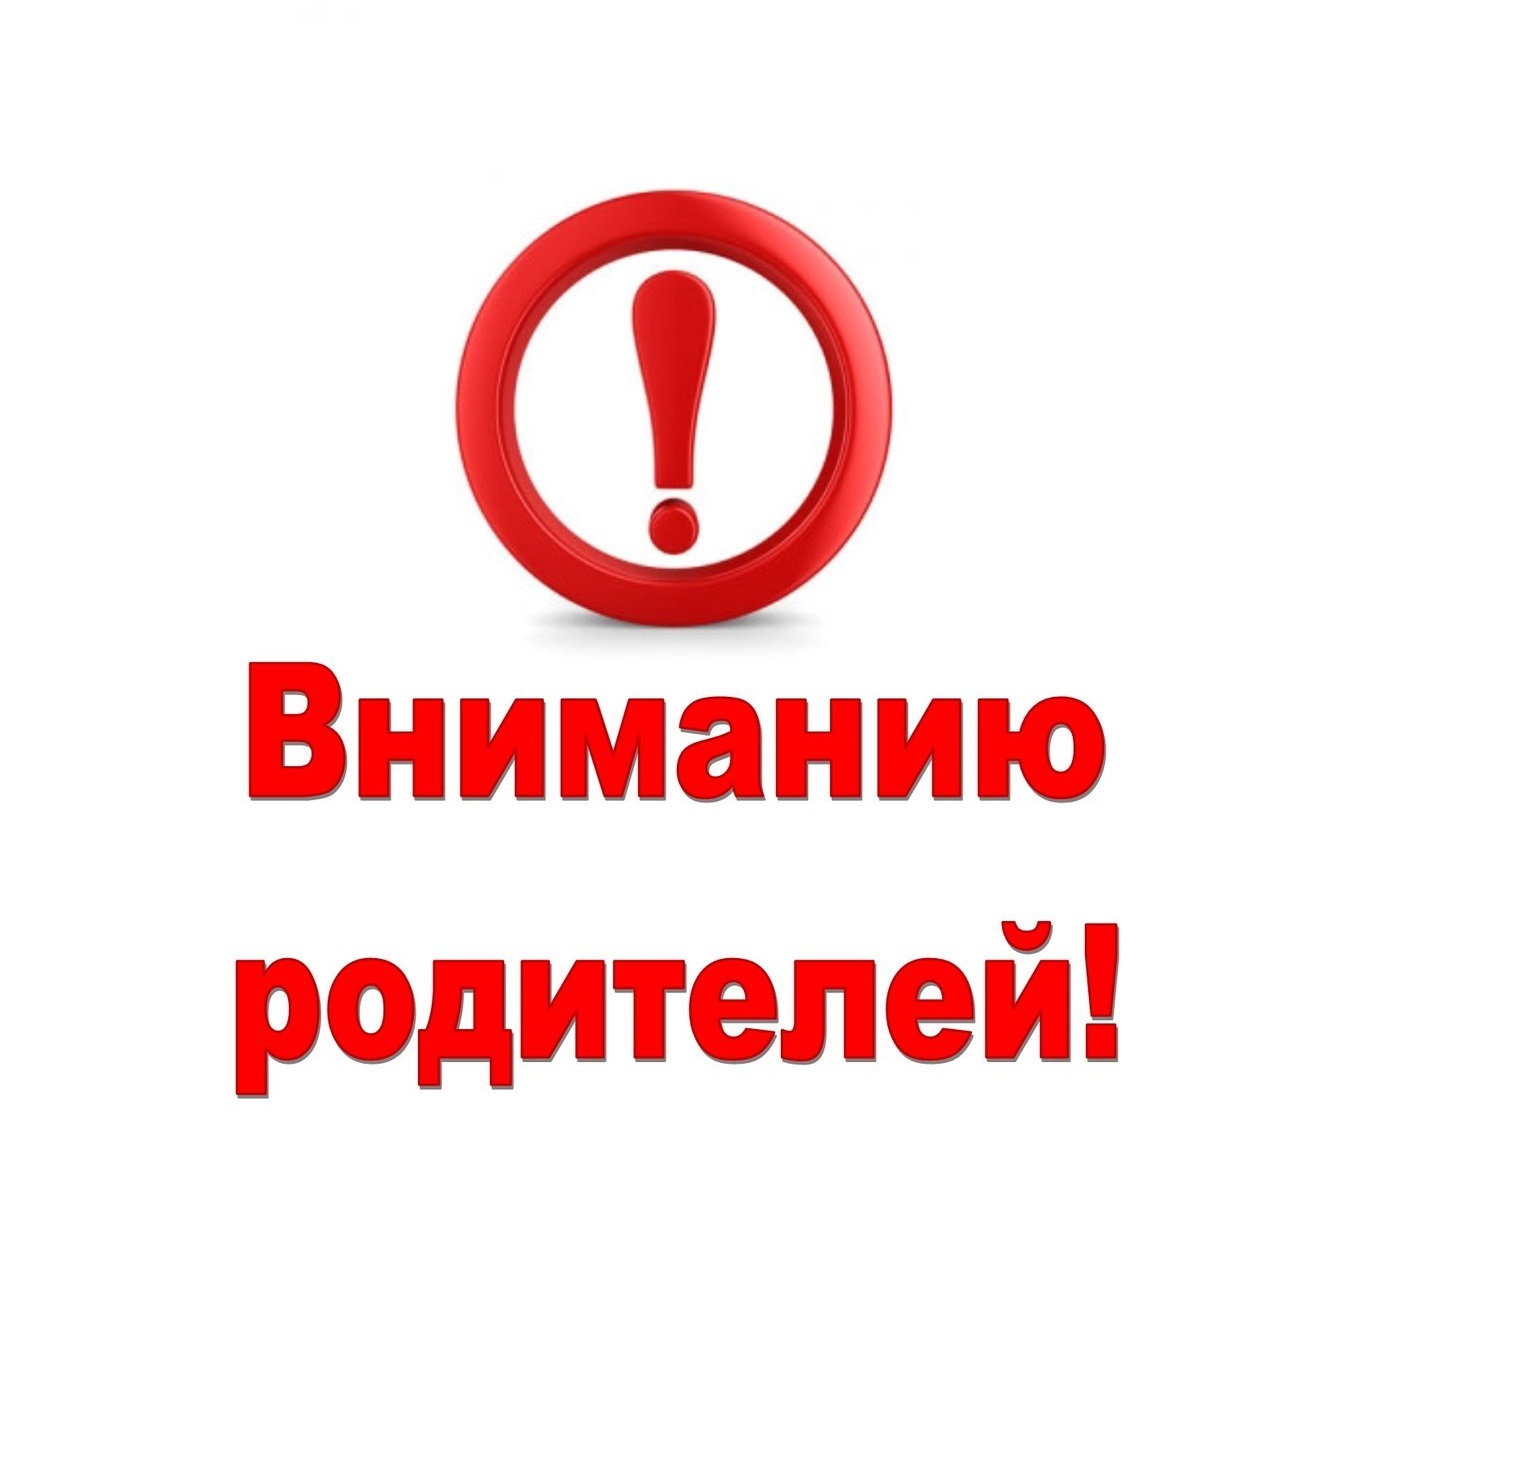 ОГБУСО «Комплексный центр социального обслуживания населения Качугского района» информирует!